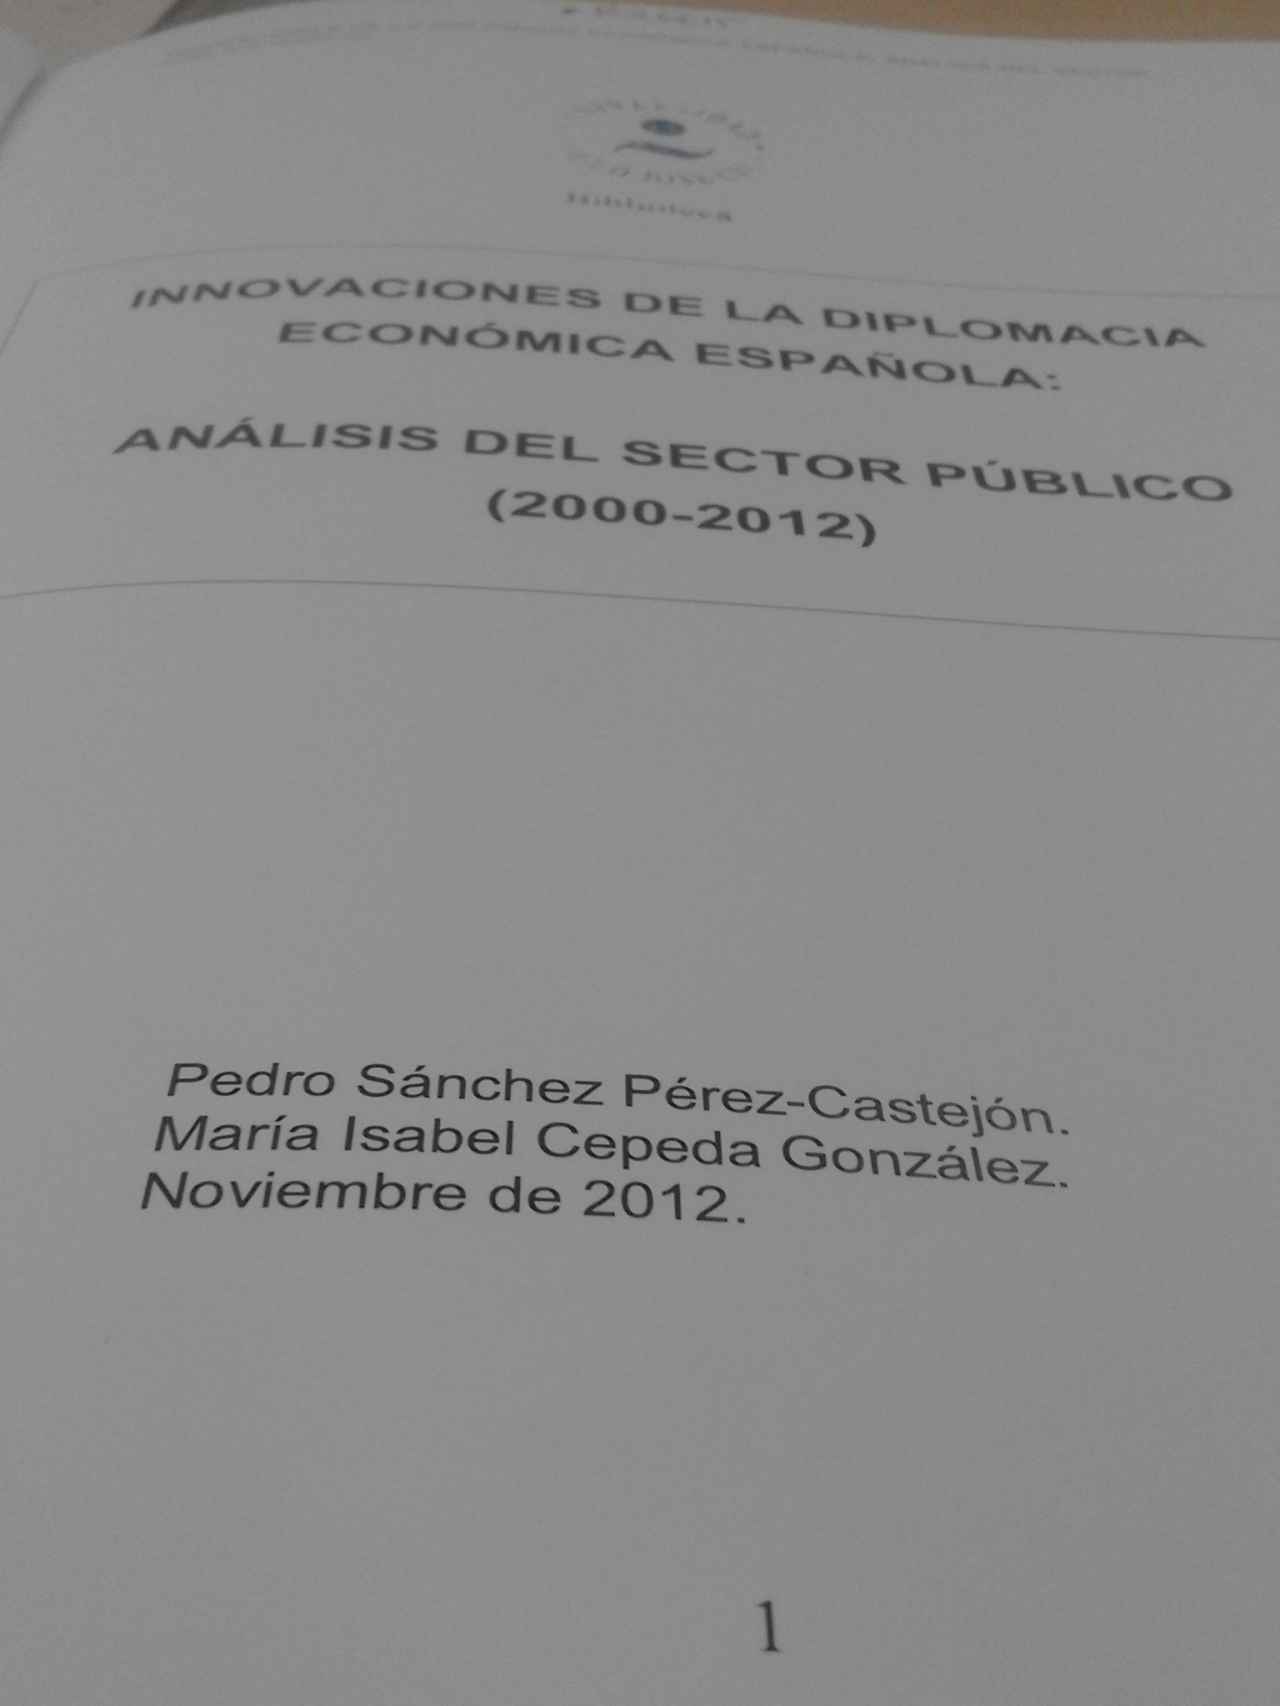 Primera página de la tesis de Pedro Sánchez en el original que se conserva en la UCJC.